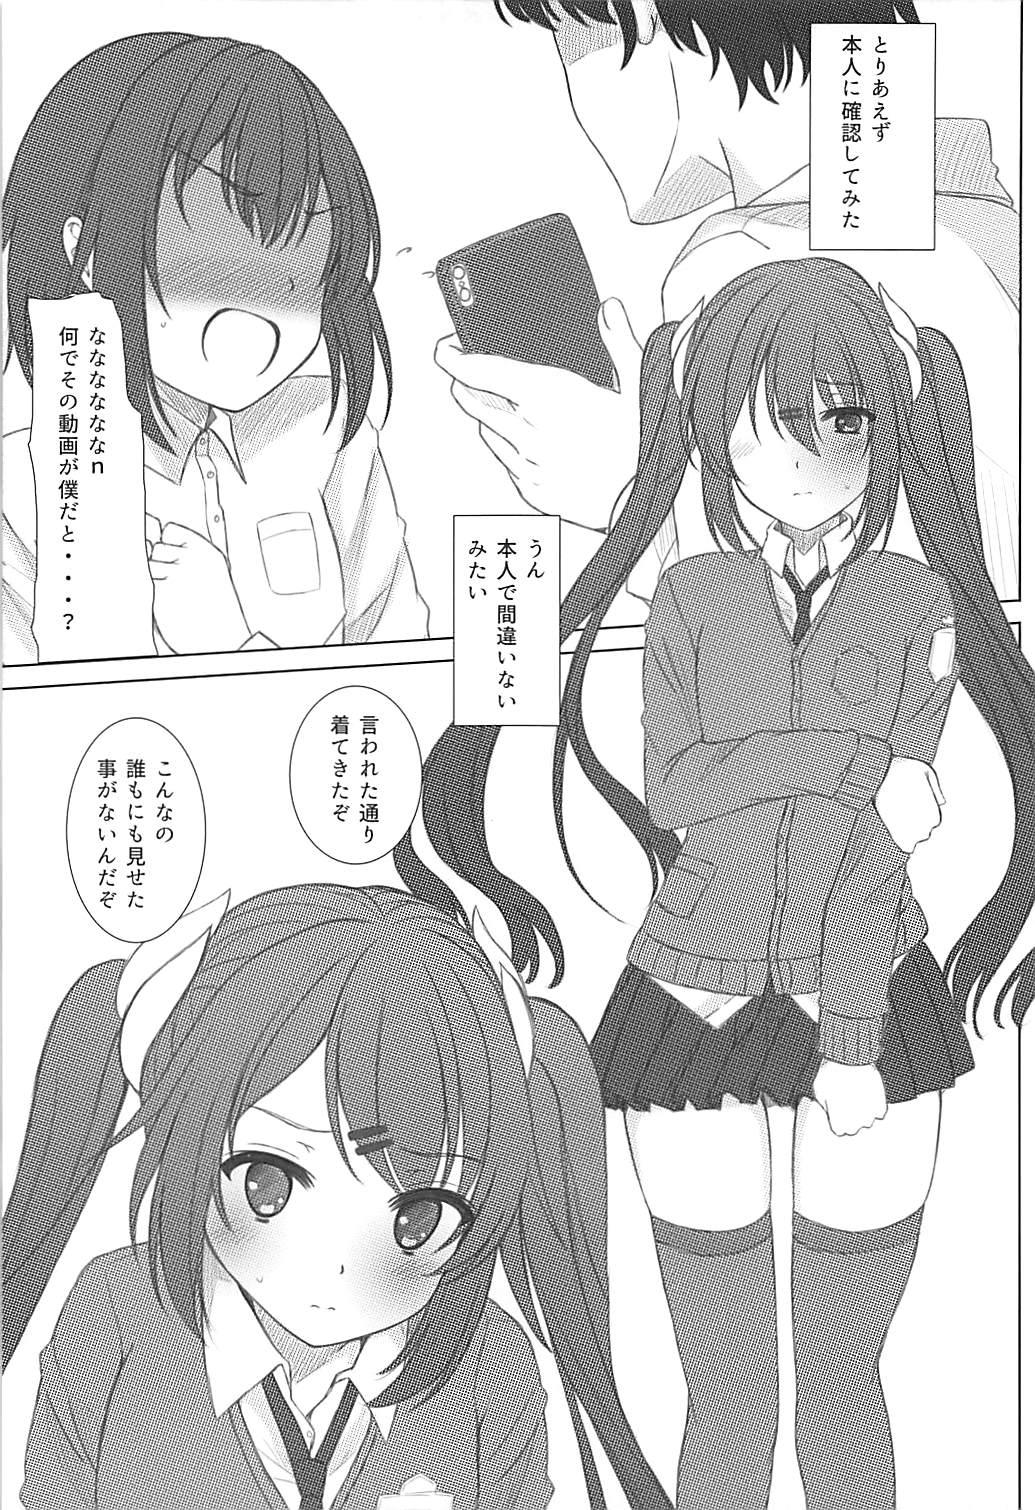 Long Hair Haruna-kun Celebration 2 - Azur lane Gayemo - Page 4